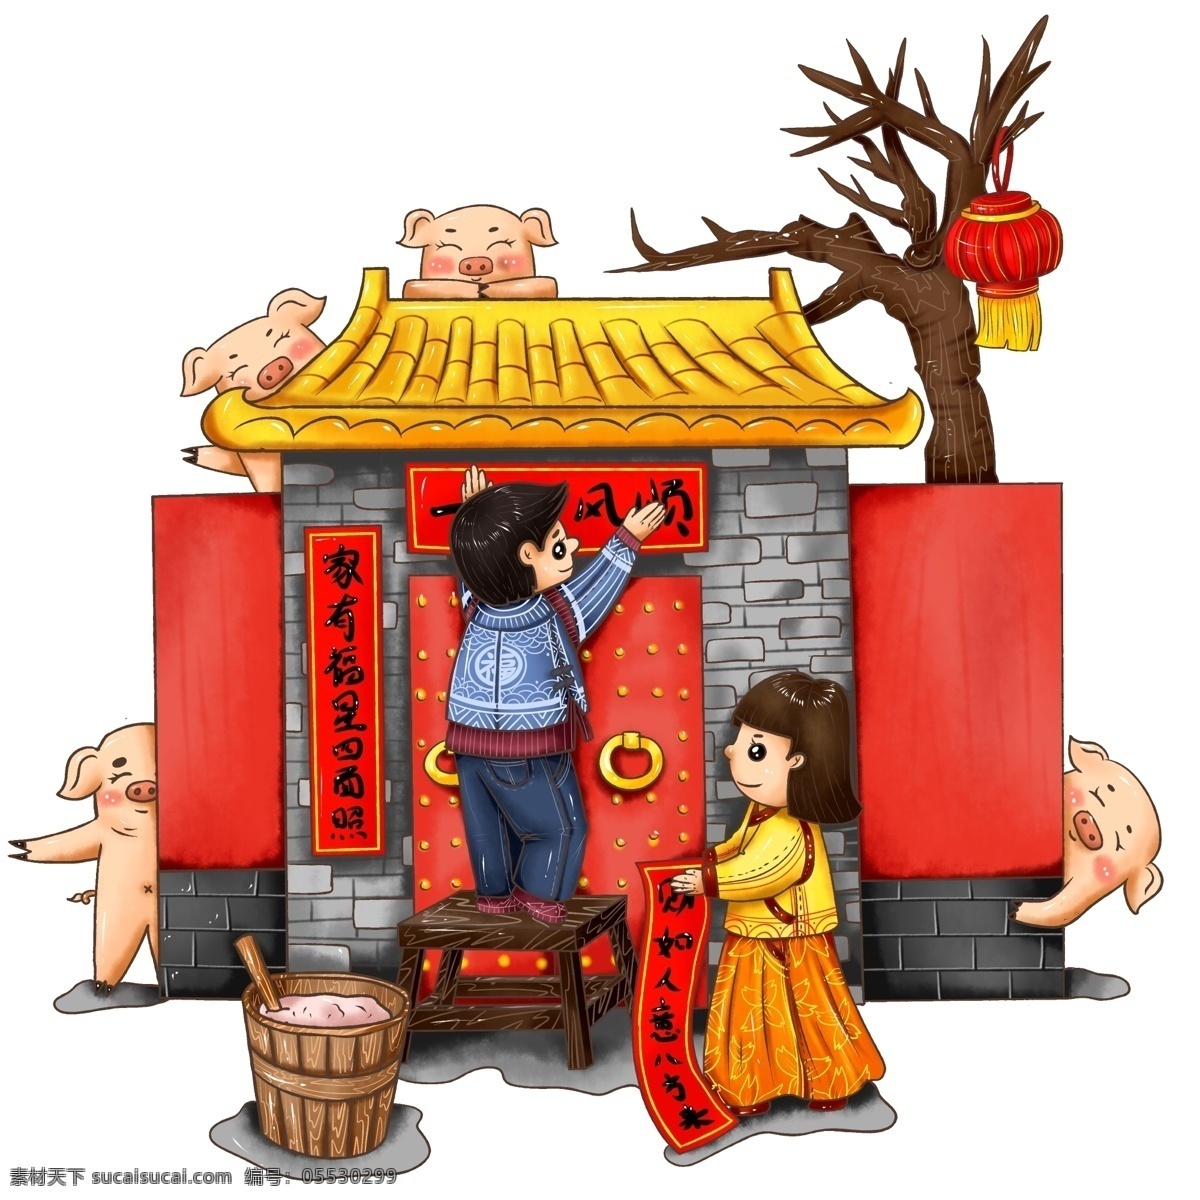 原创 手绘 民宅 灯笼 对联 猪 形象 贴 春联 元素 中国风 人物 海报素材 插画 贴对联 猪形象 猪年 男孩 女孩